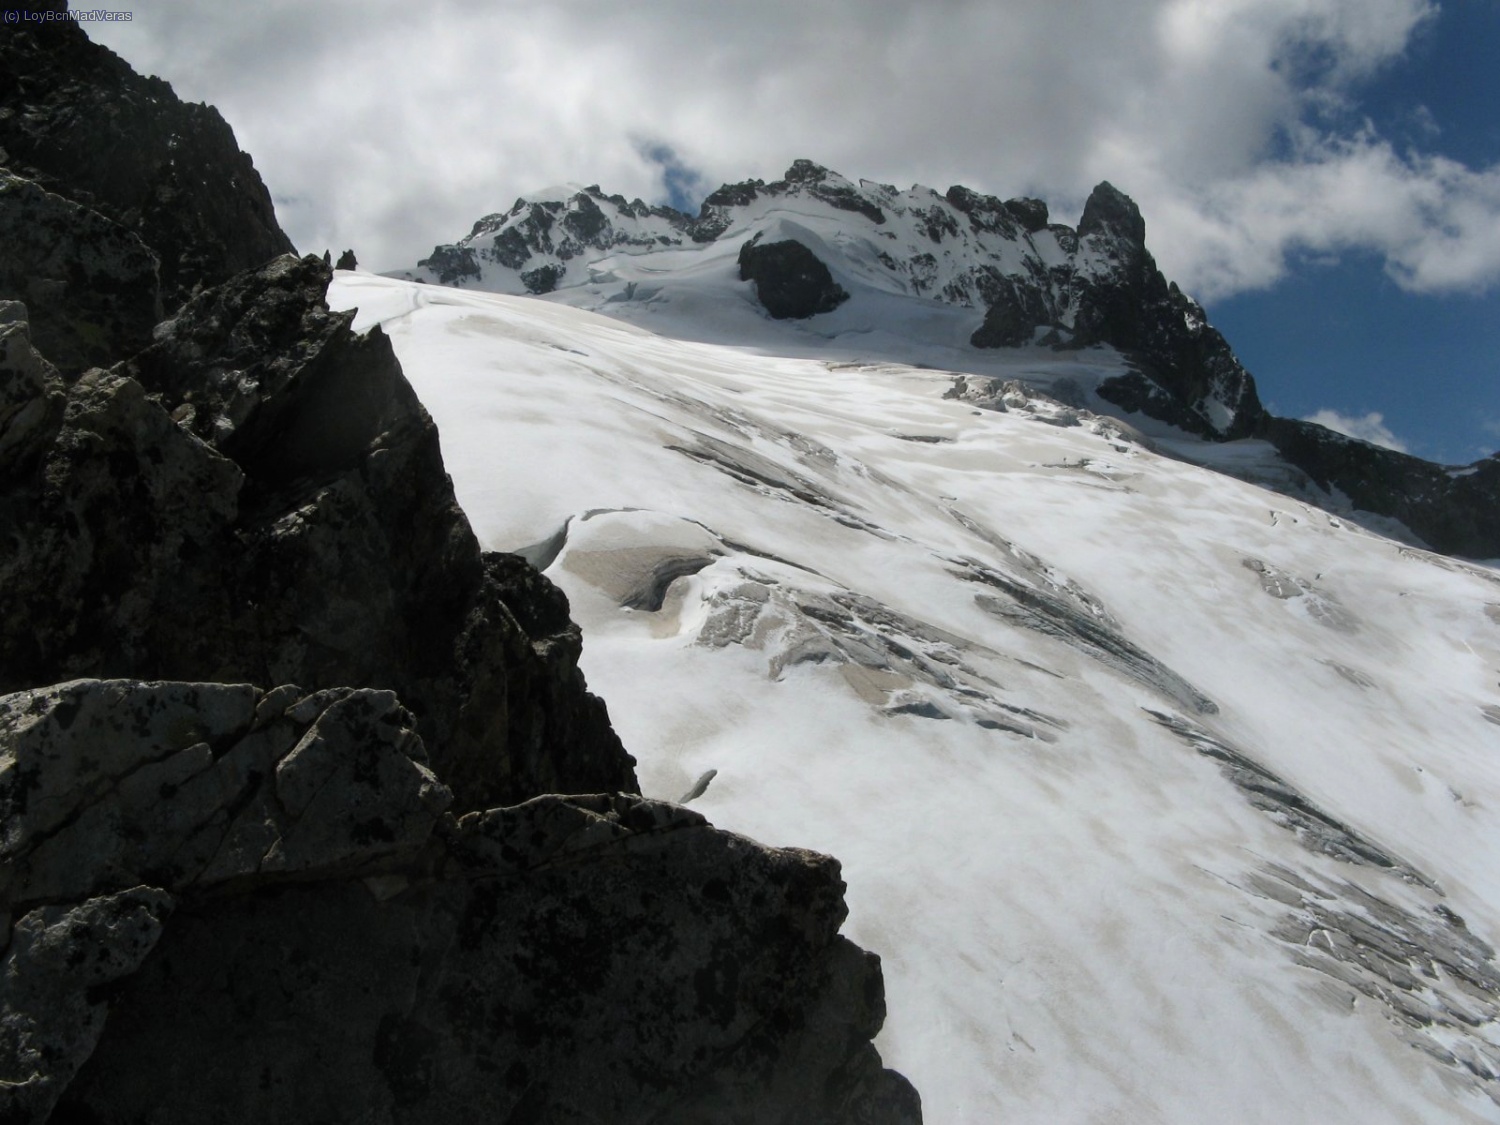 Vista del Glaciar y el cresterio de la Meije